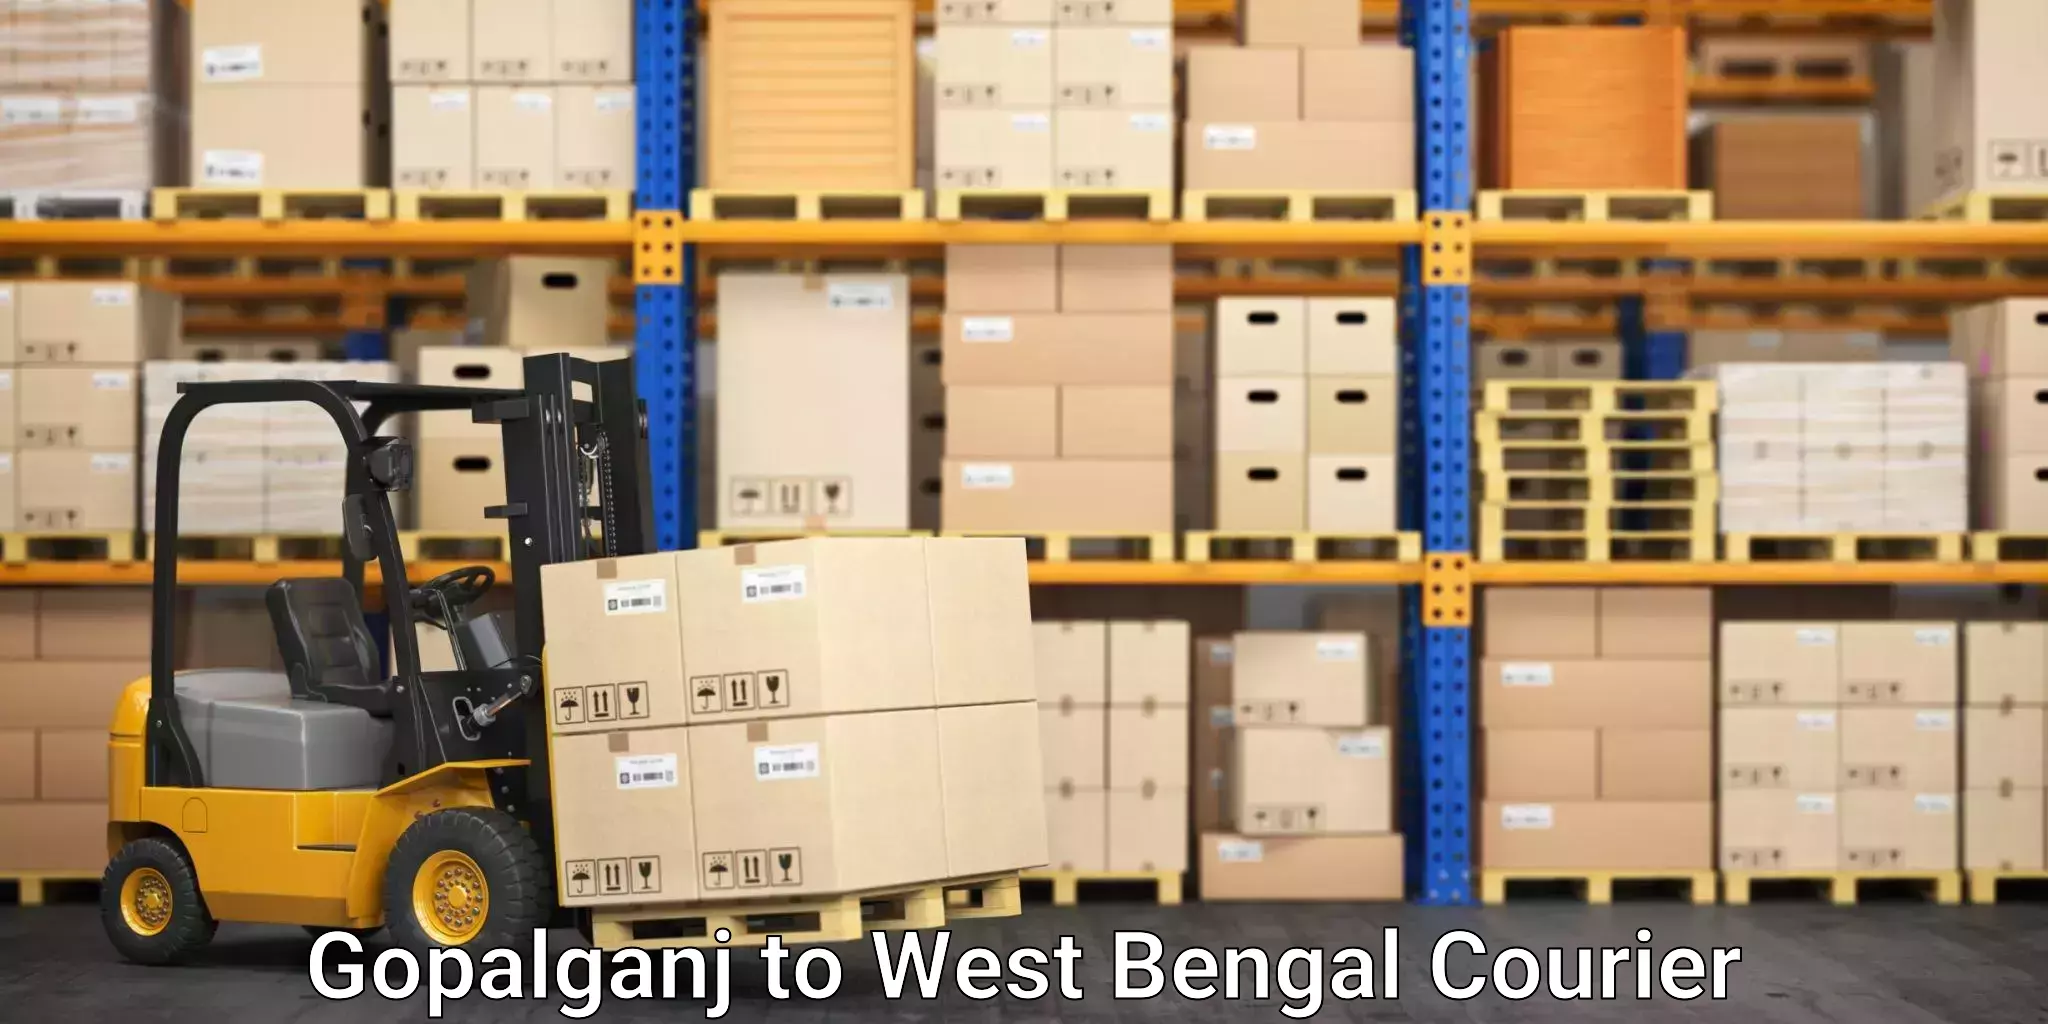 Household moving experts Gopalganj to West Bengal